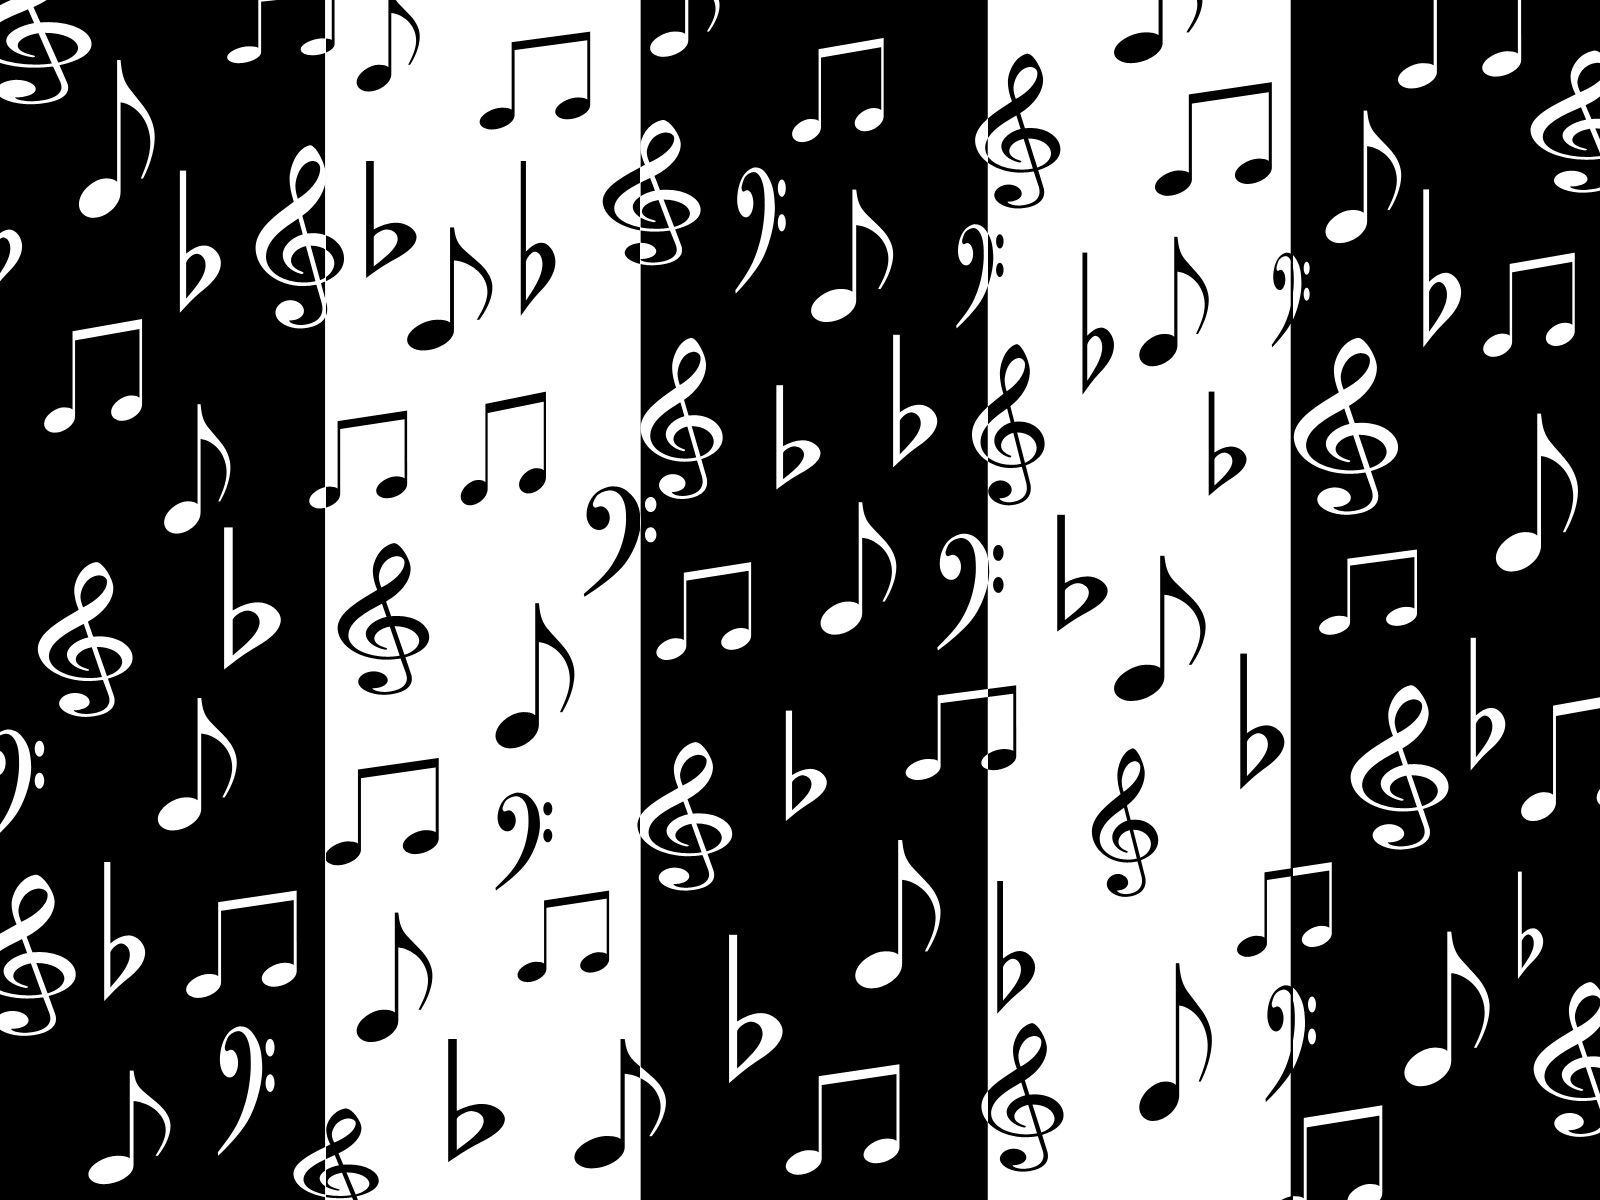 عکس نوت های موسیقی با طرح سیاه و سفید